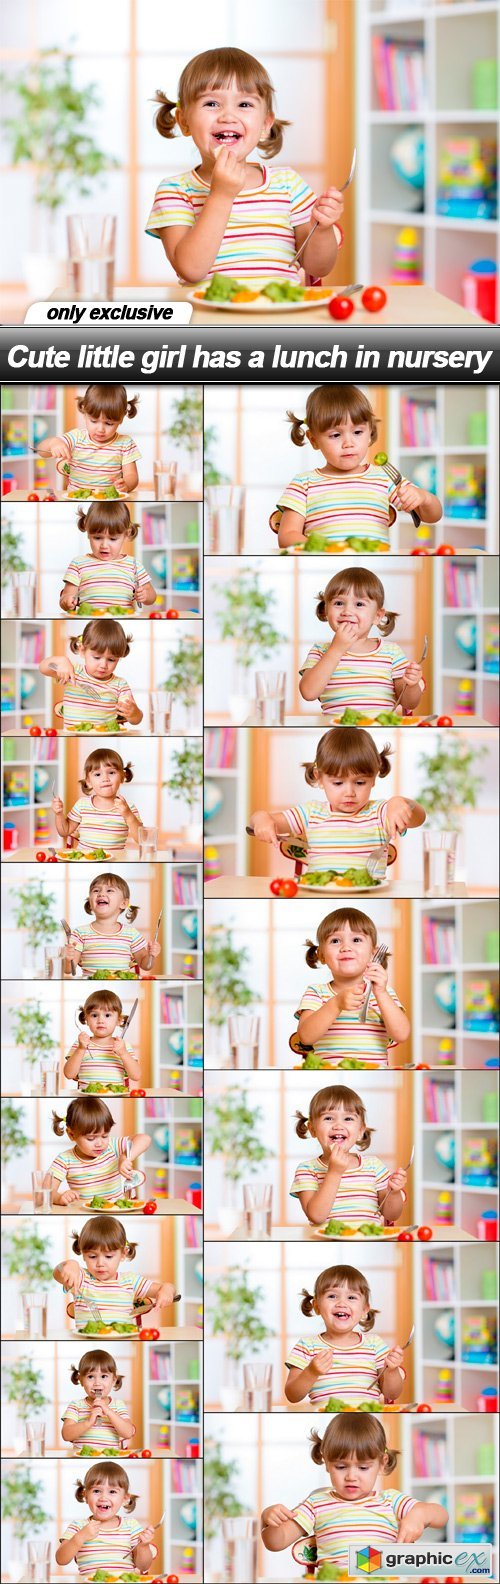 Cute little girl has a lunch in nursery - 17 UHQ JPEG